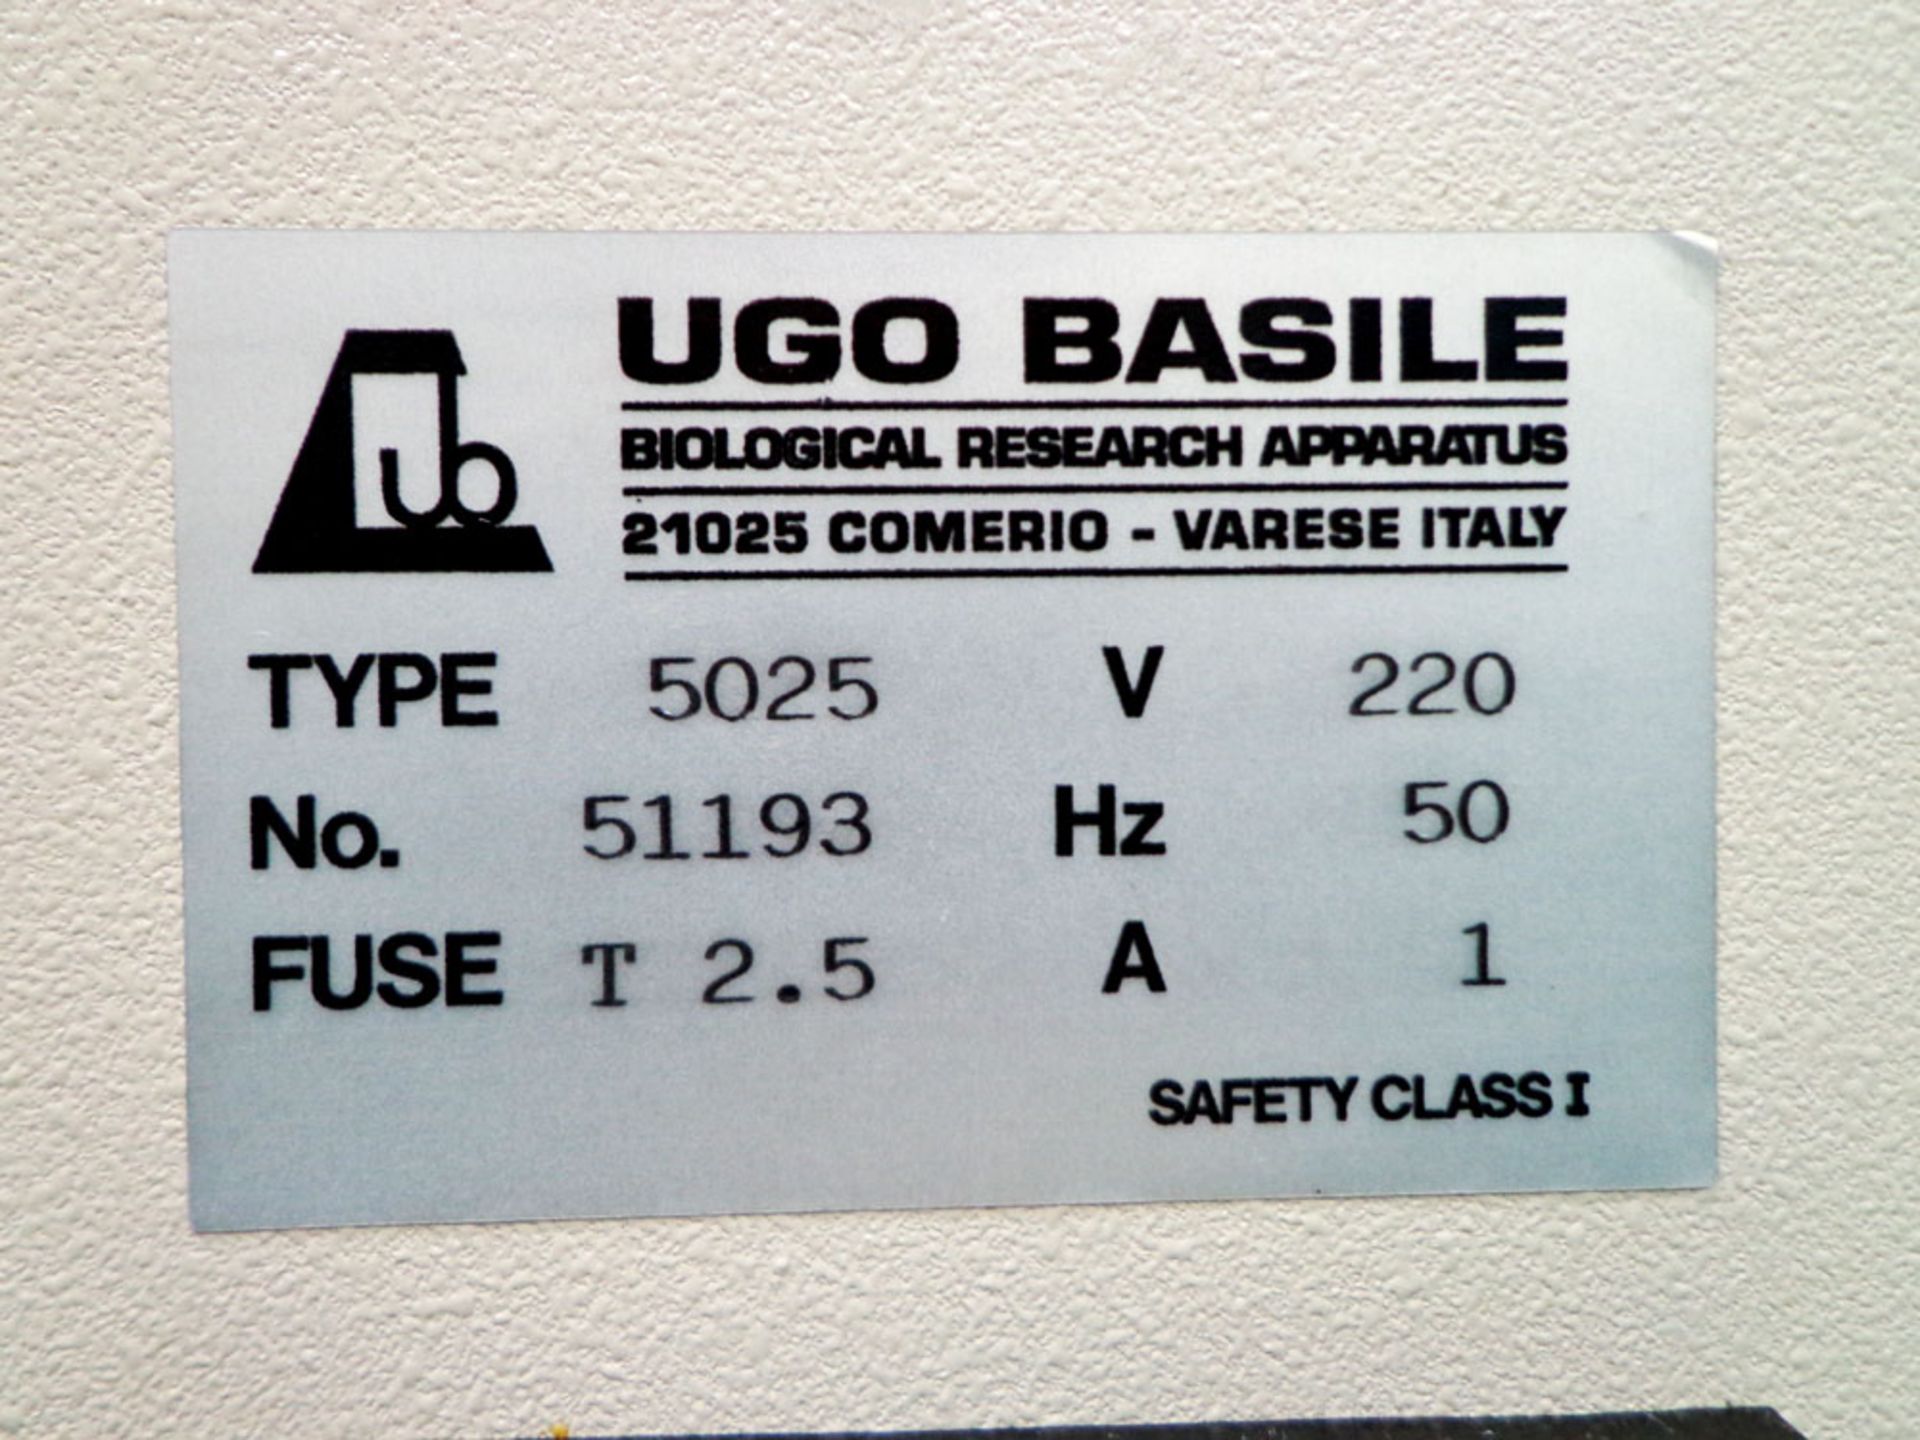 UGO Basile 5025 Dog Ventilator, 700 ml cylinder/ piston, S/N 51193 - Image 5 of 7